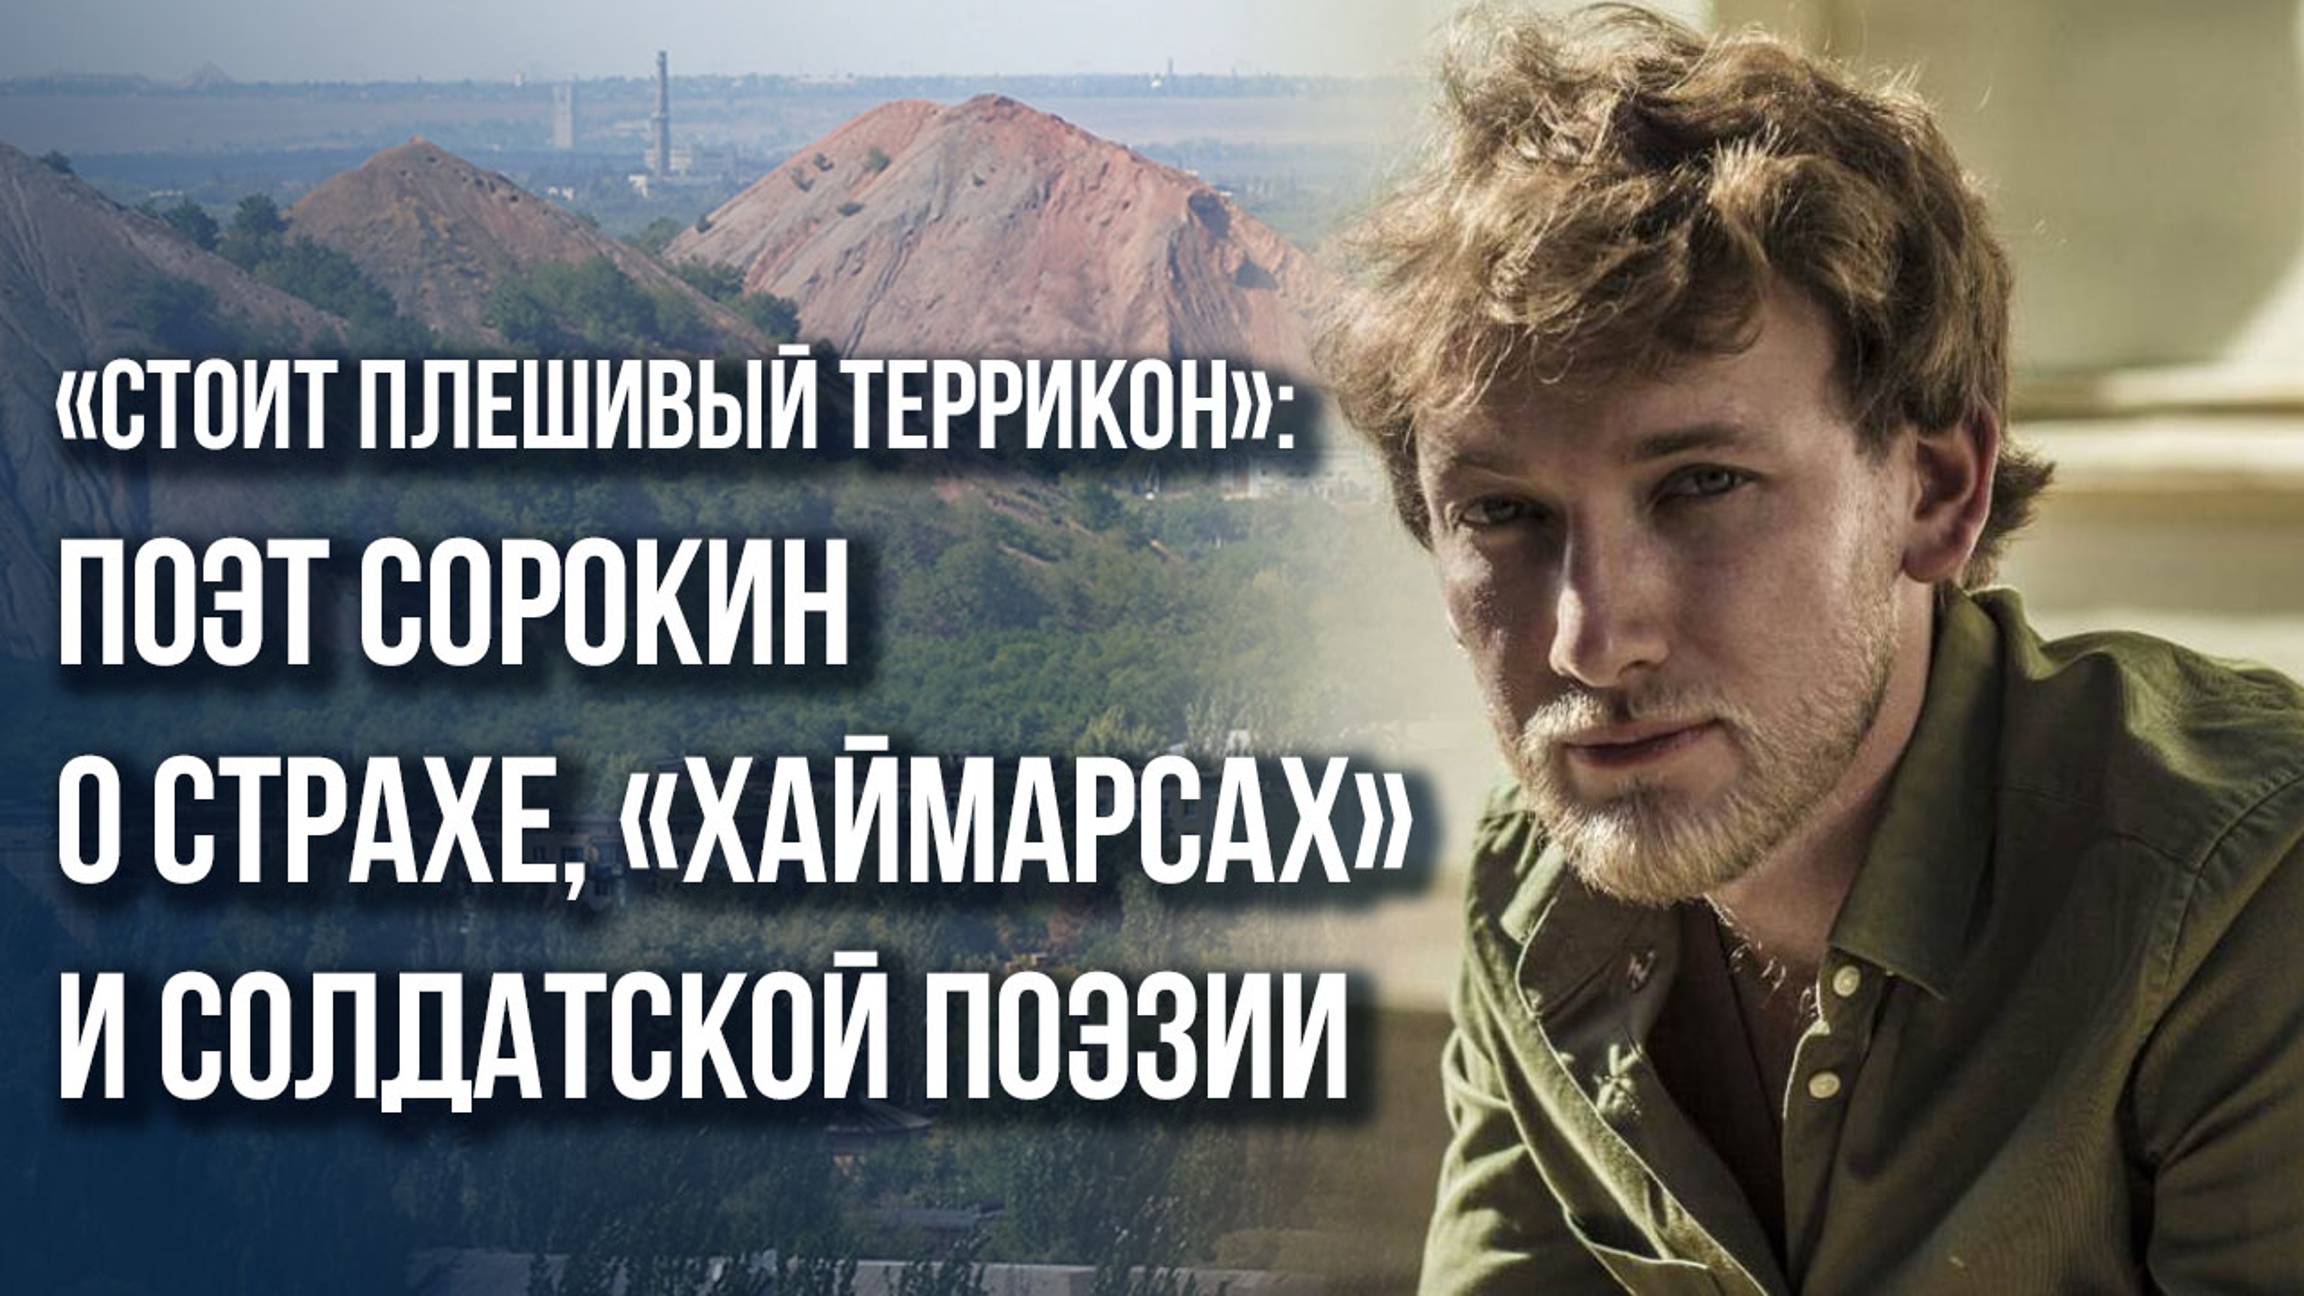 Самое страшное – это «тихушники»: поэт Сорокин о предателях в культуре и власти России